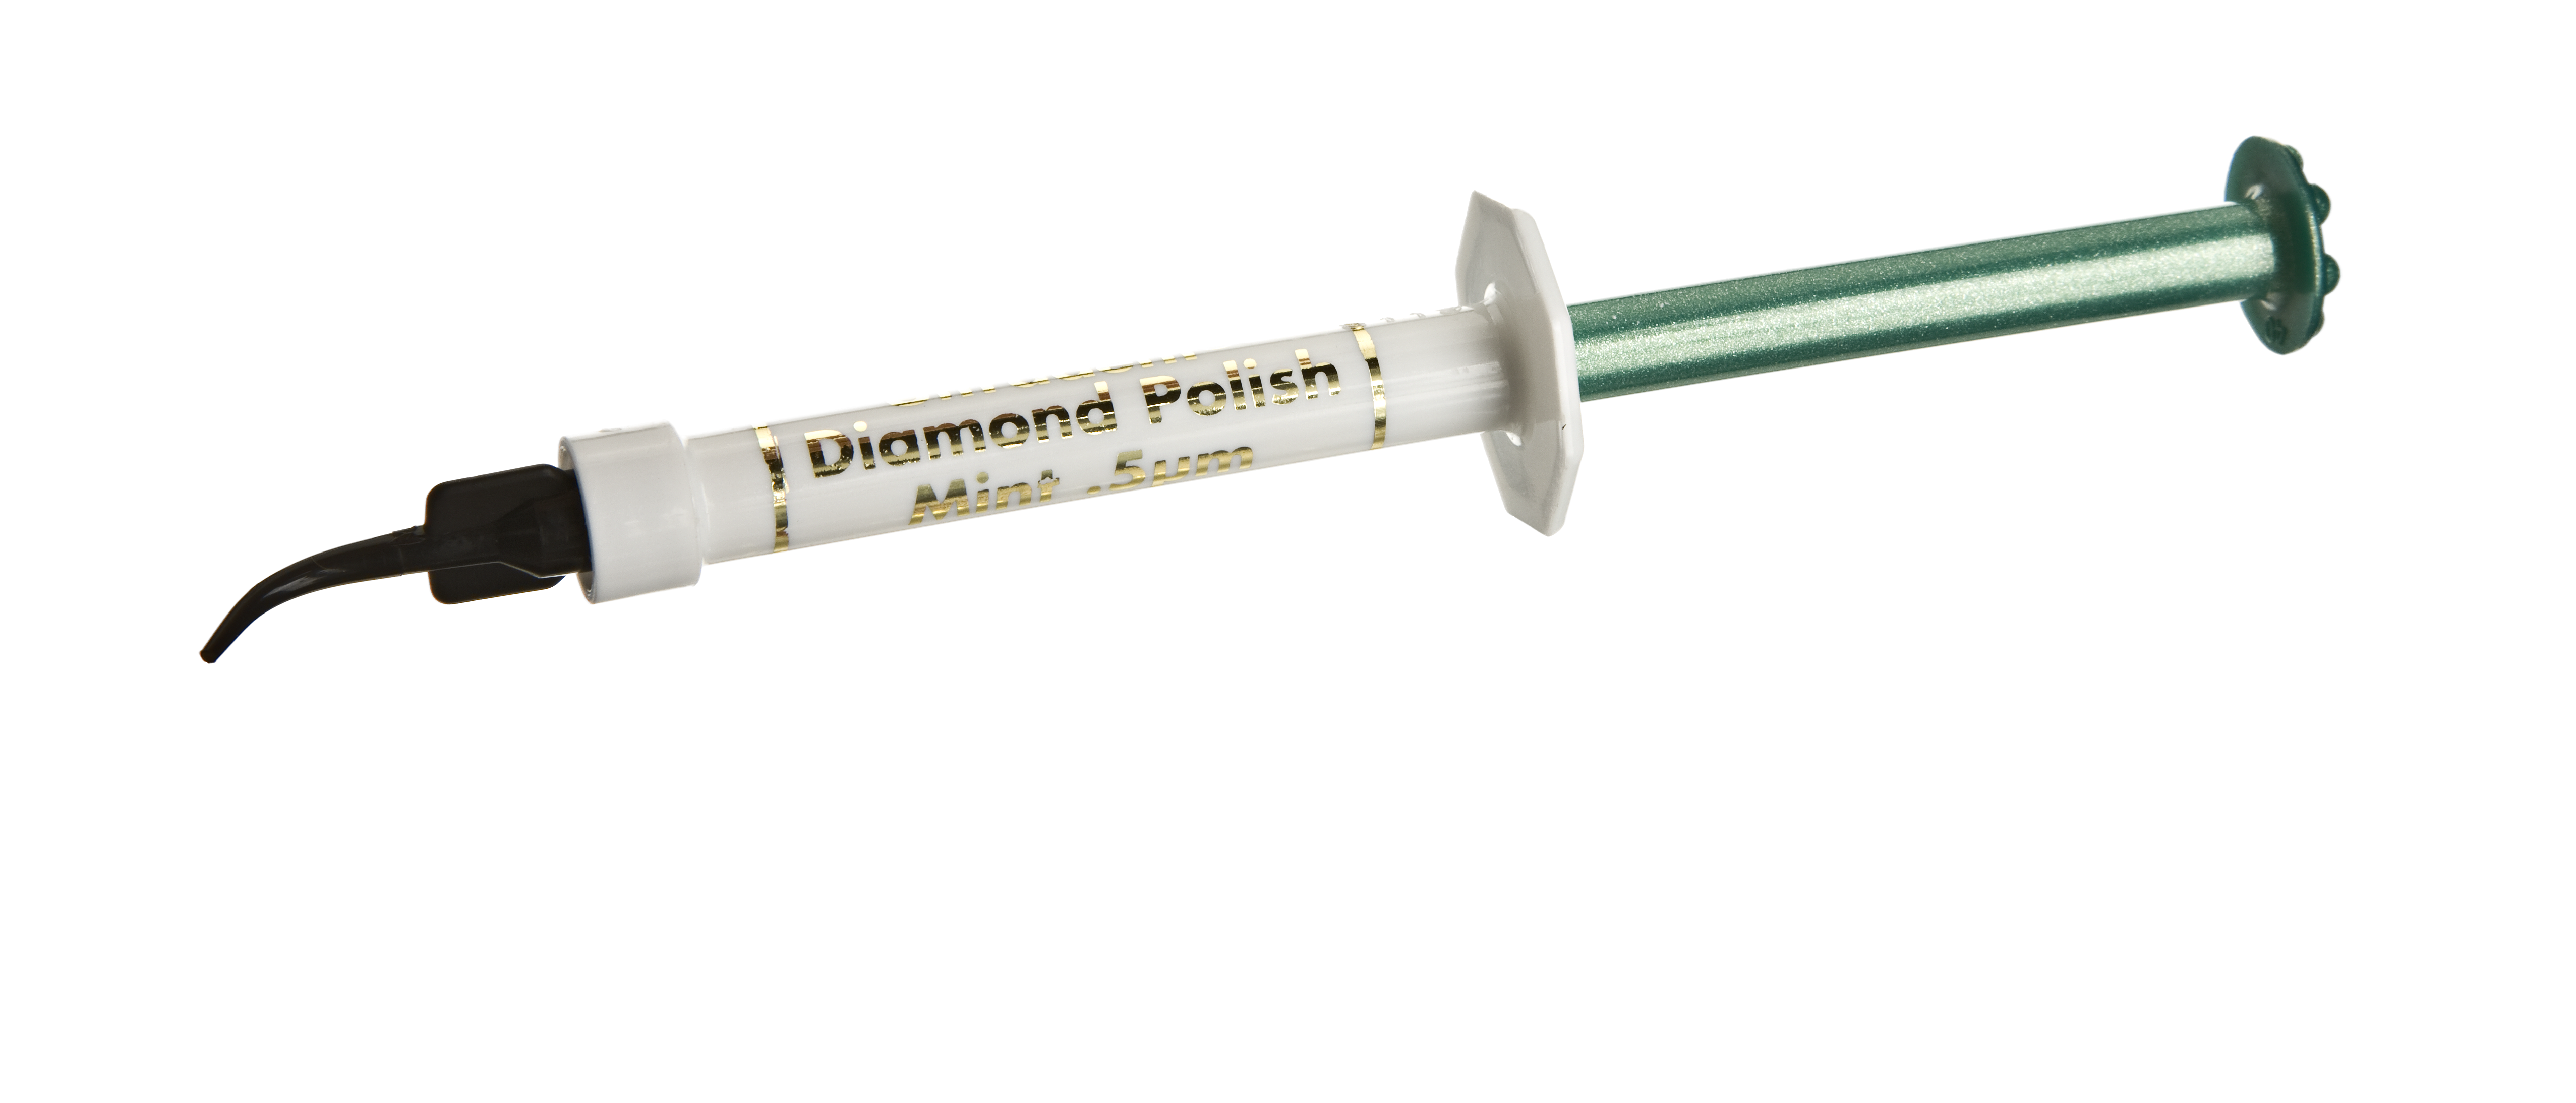 Diamond polish syringe FINISH 08